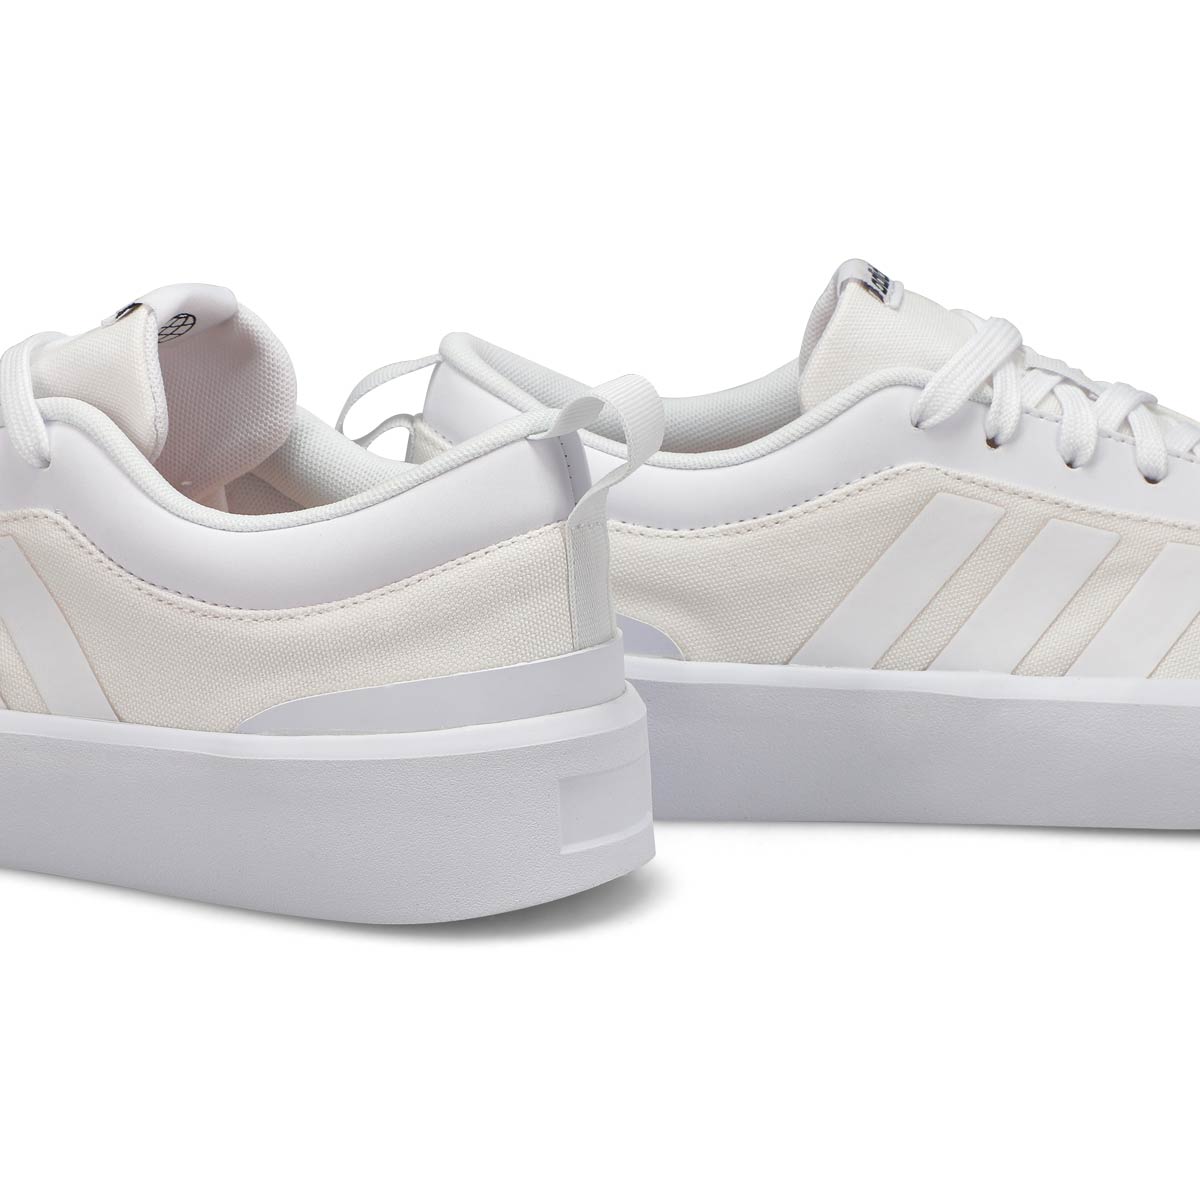 Women's Futurevulc Lace Up Sneaker - White